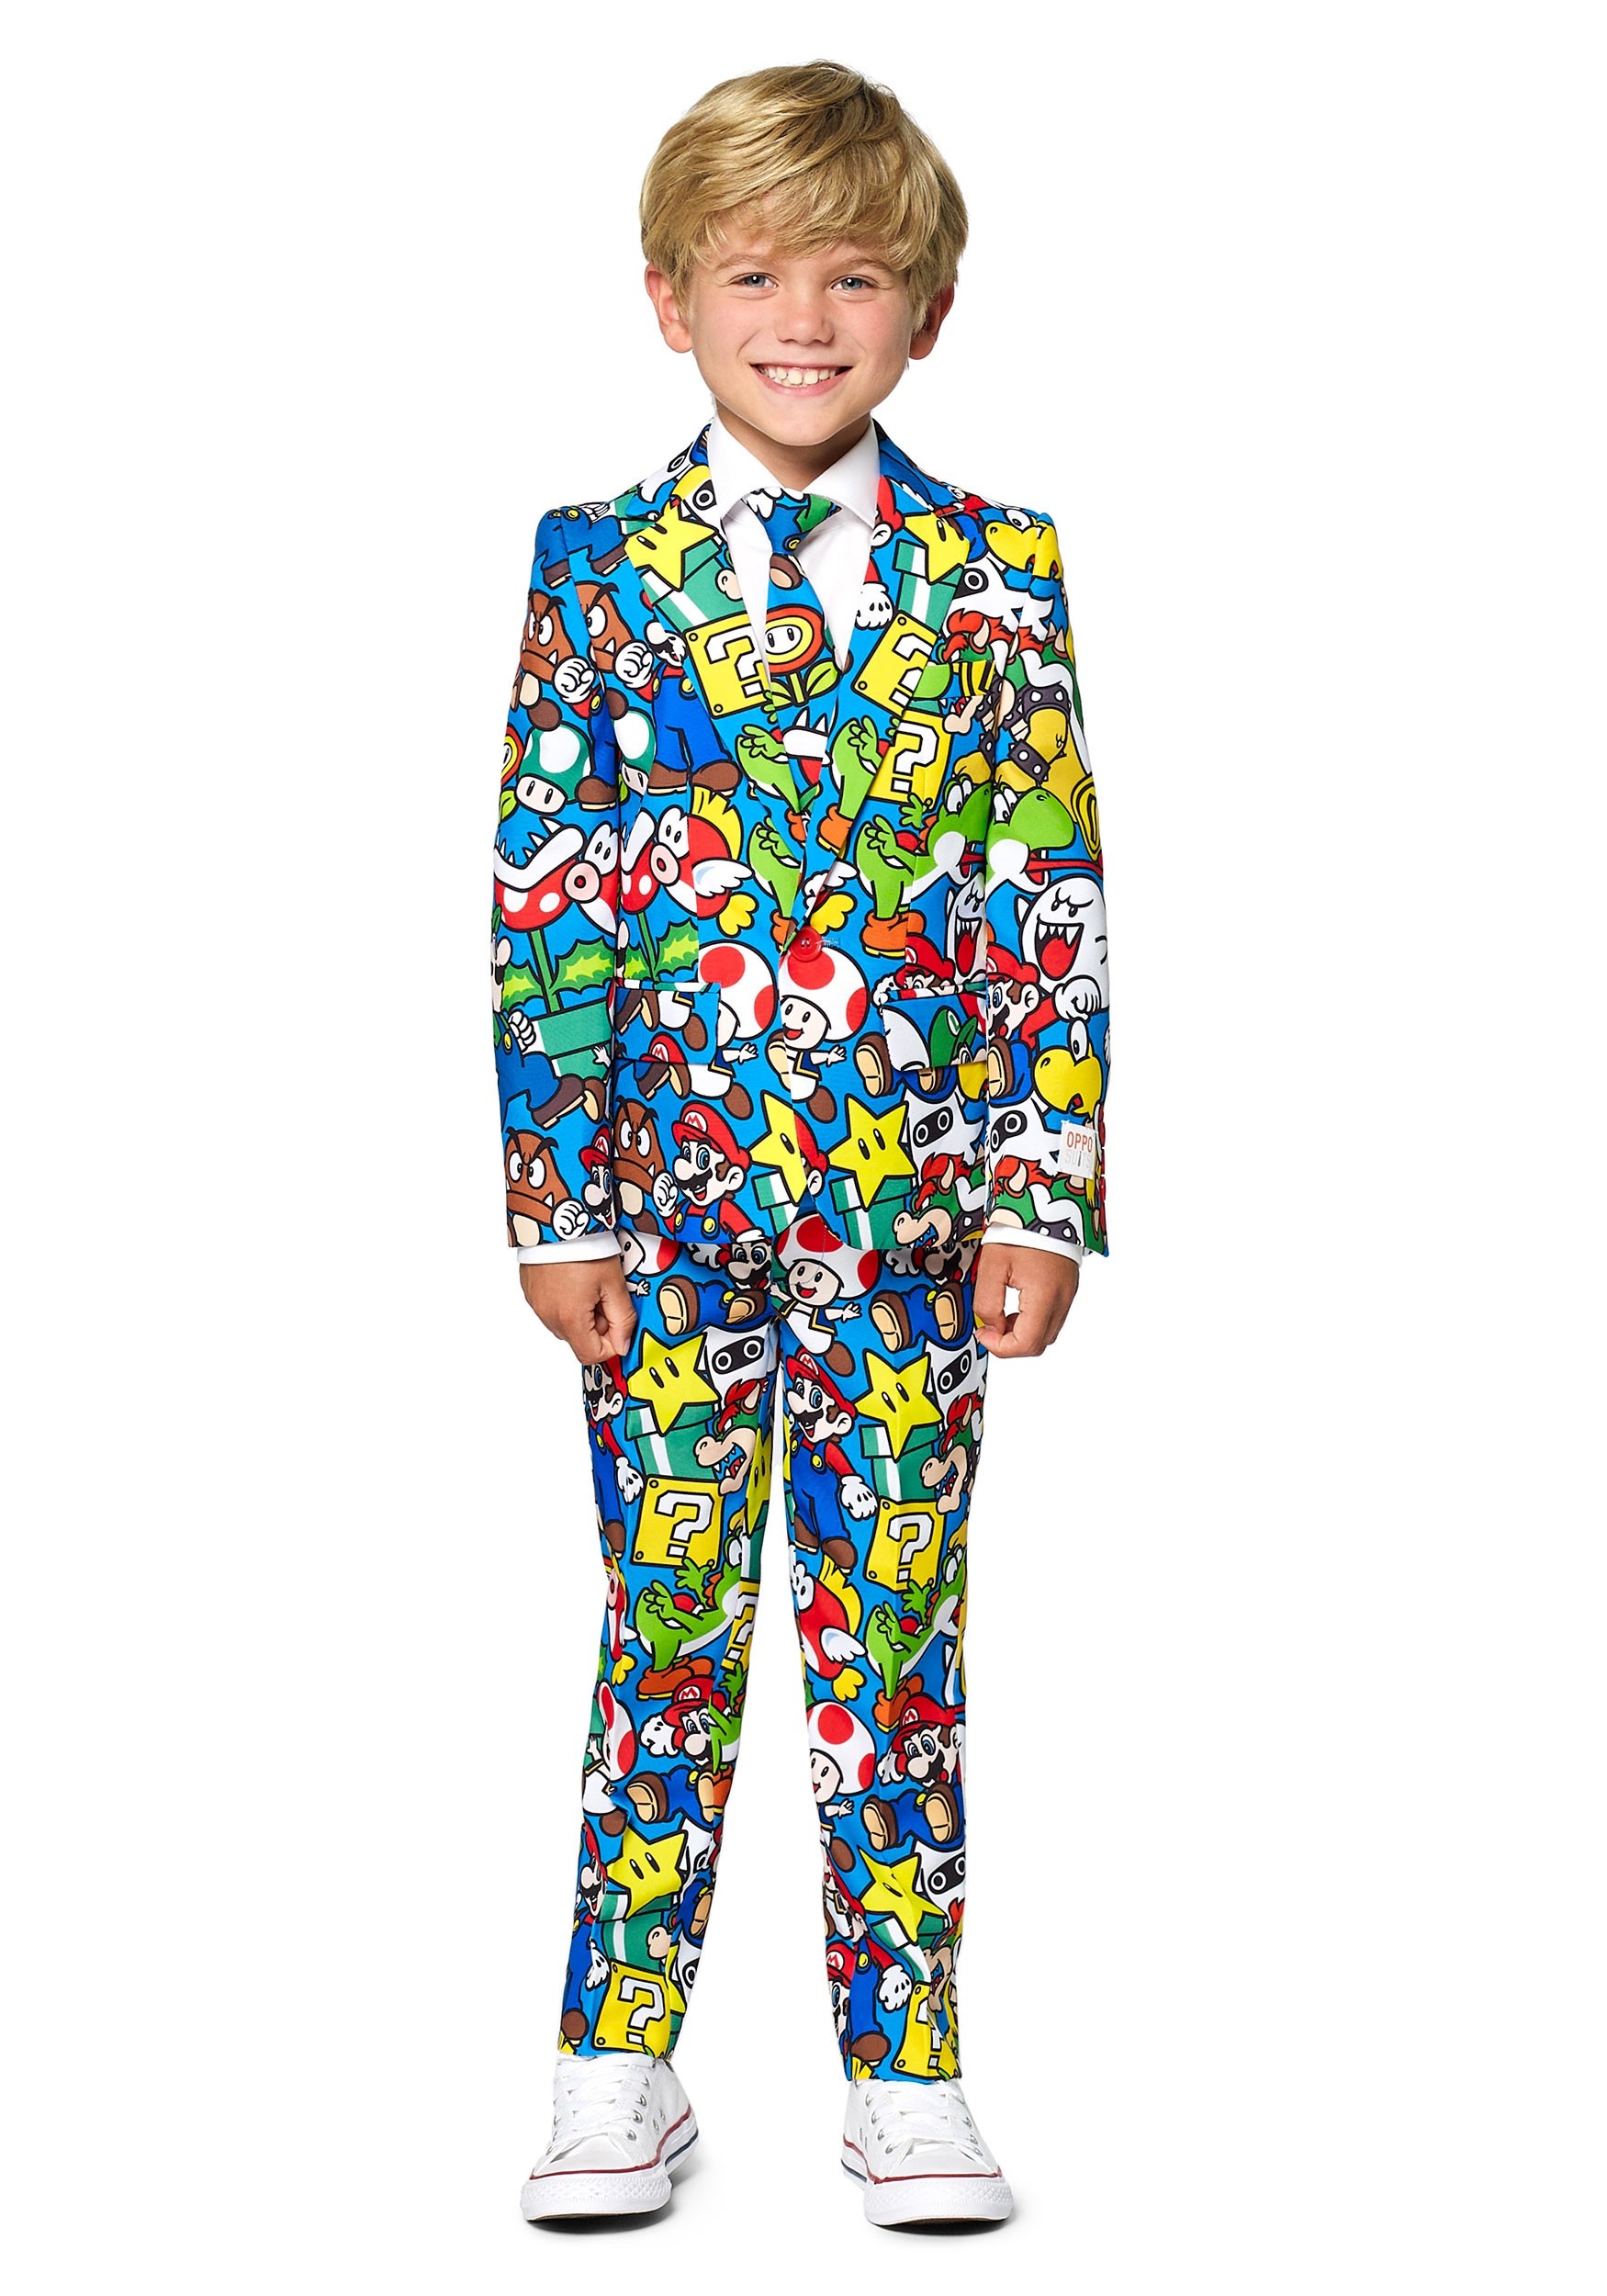 Opposuit: Super Mario Boy’s Suit